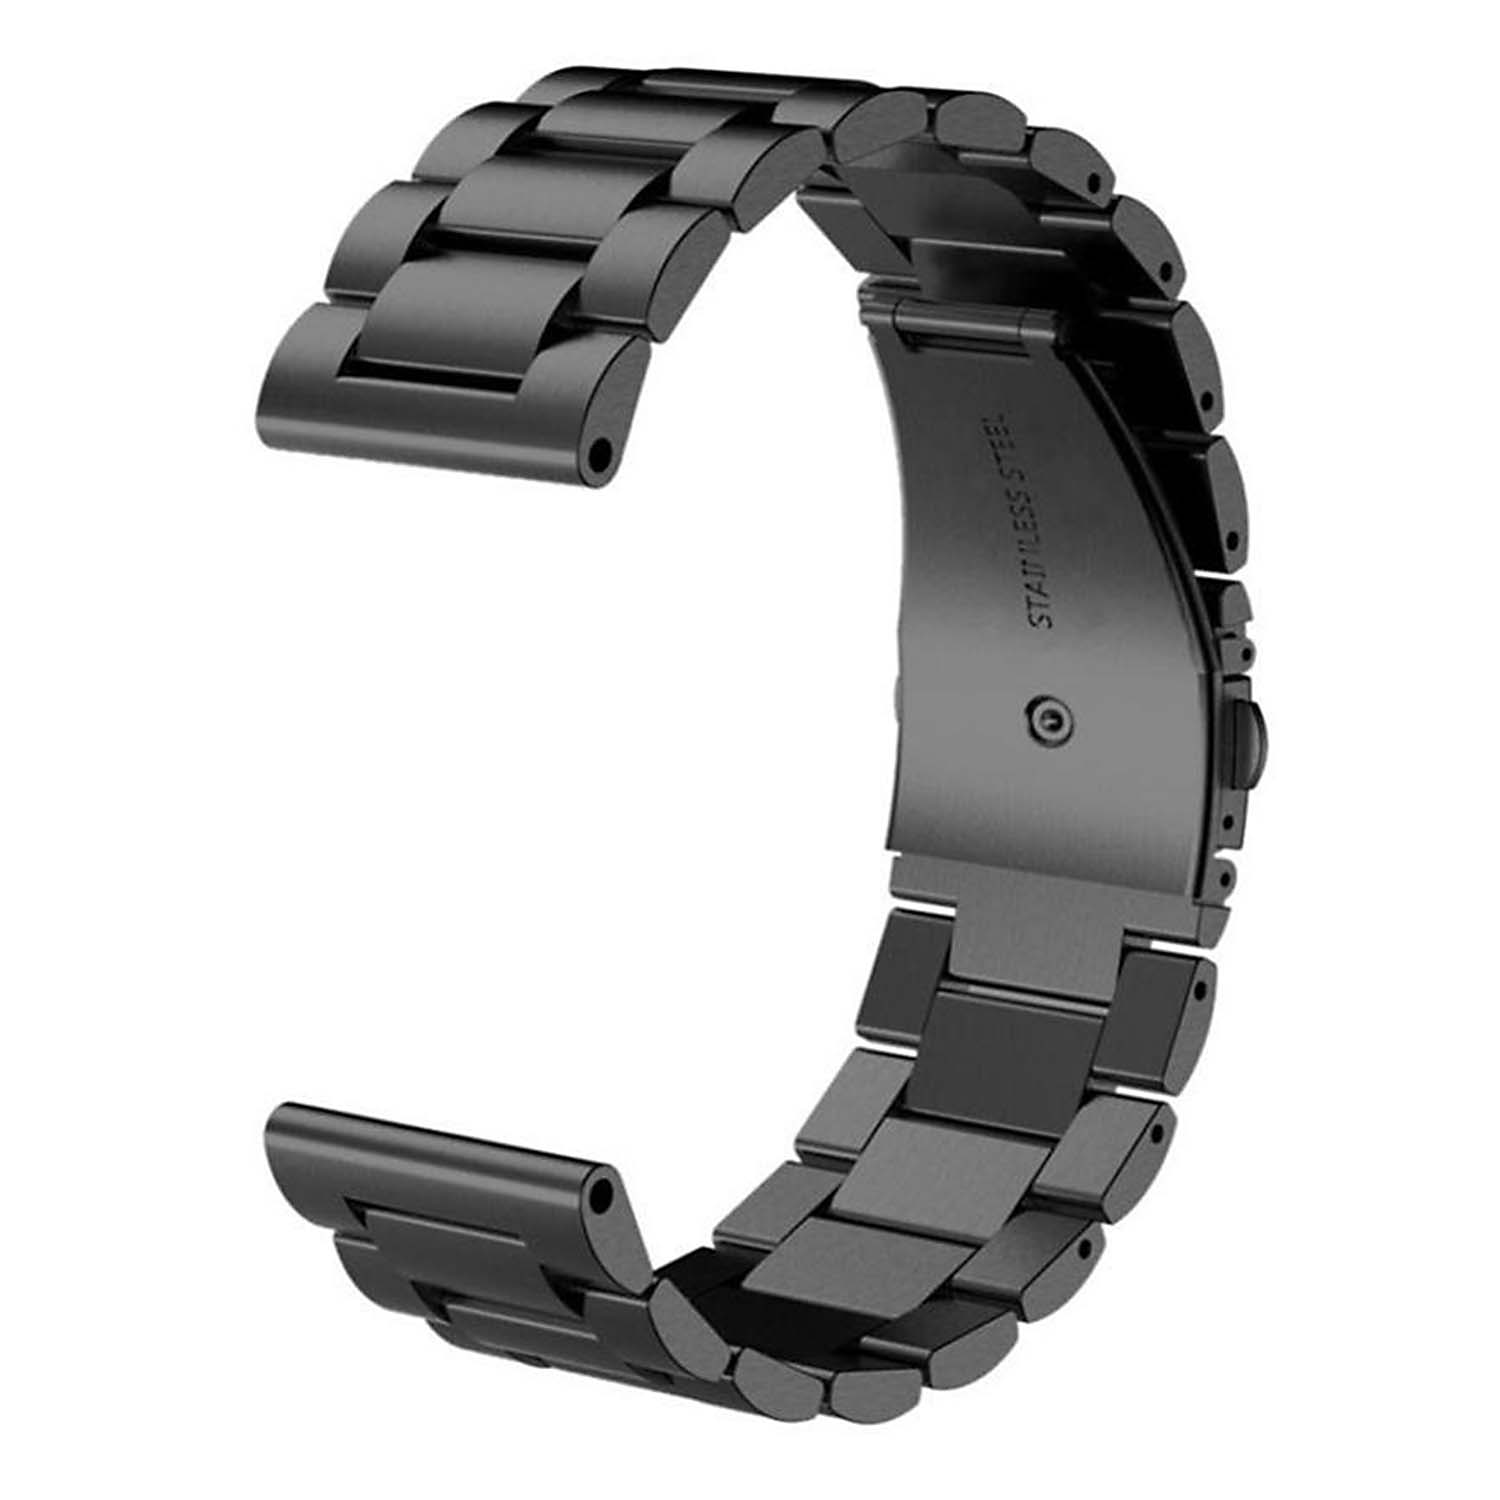 Strapsco Black Stainless Steel Bracelet for Garmin Fenix 3 / 3 HR / 5X / 5X Plus / 6X